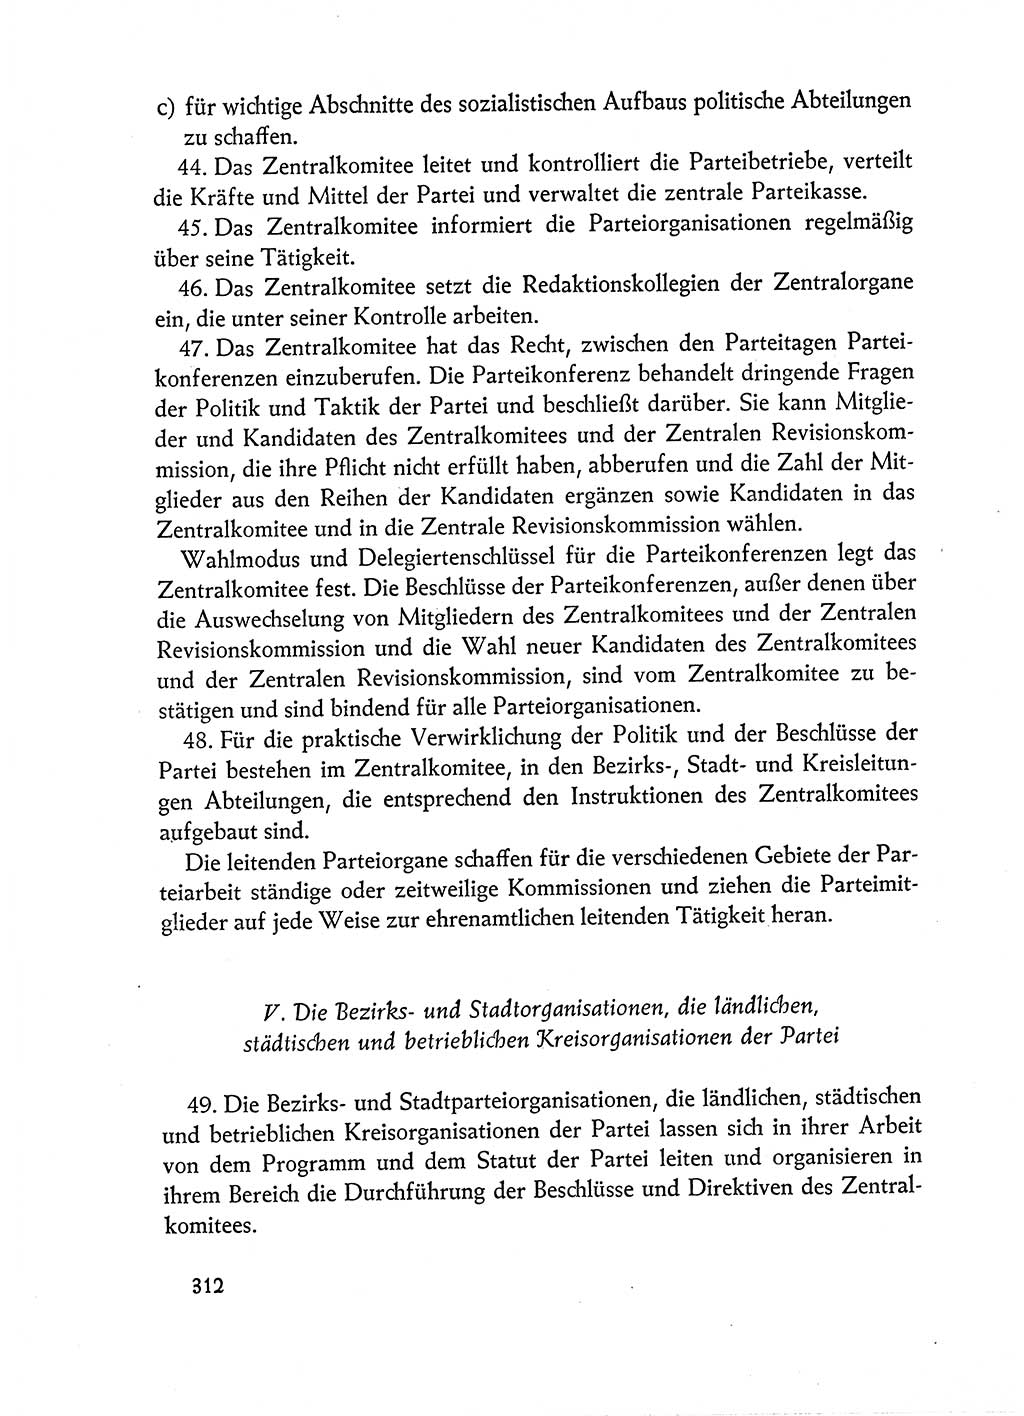 Dokumente der Sozialistischen Einheitspartei Deutschlands (SED) [Deutsche Demokratische Republik (DDR)] 1962-1963, Seite 312 (Dok. SED DDR 1962-1963, S. 312)